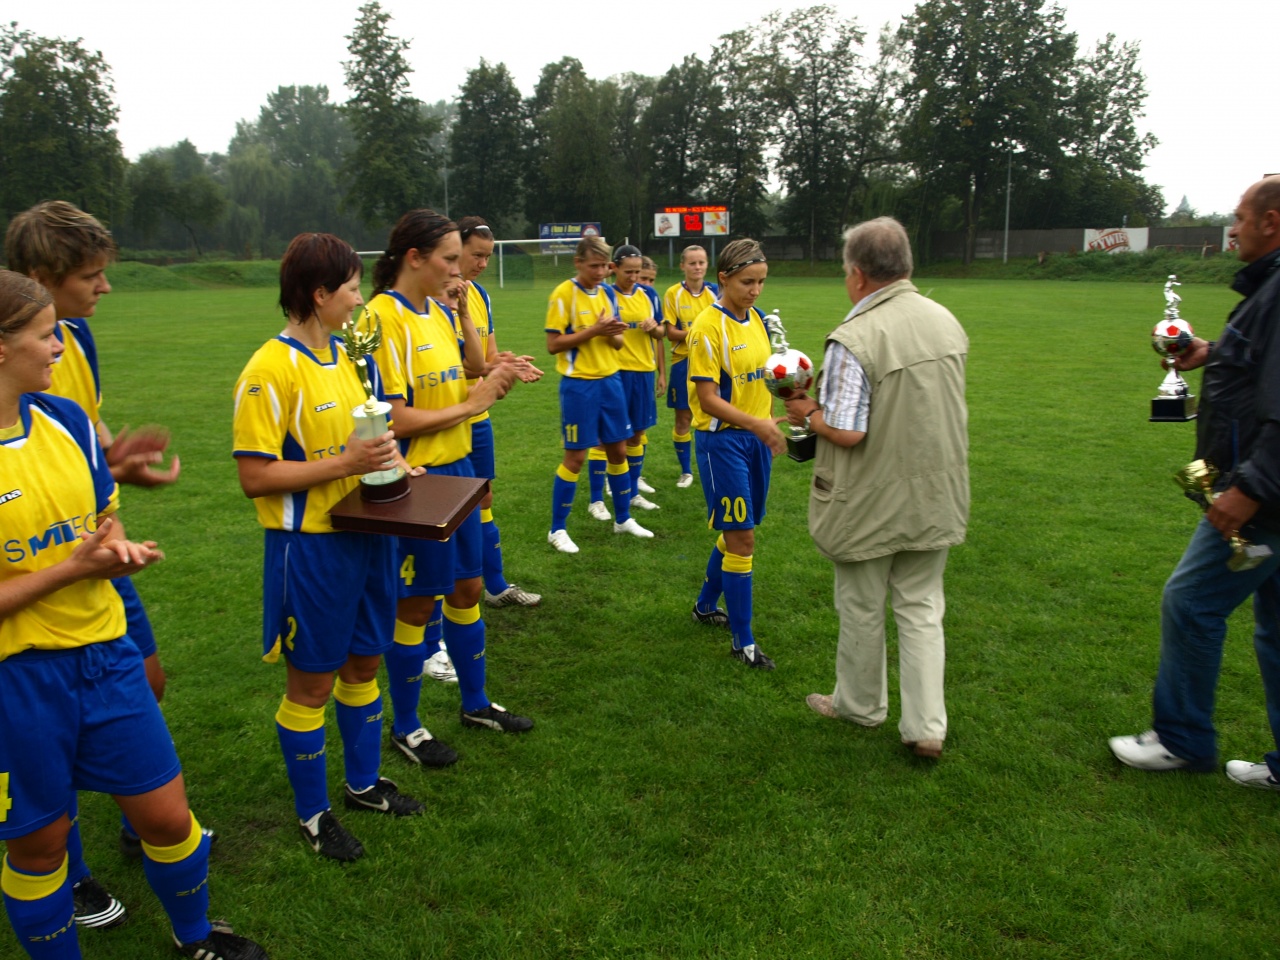 Prezes TS MITECH Jan Szupina honoruje pucharem Patrycję Jankowską - króla strzelców I ligi piłki nożnej kobiet sezonu 2008/2009